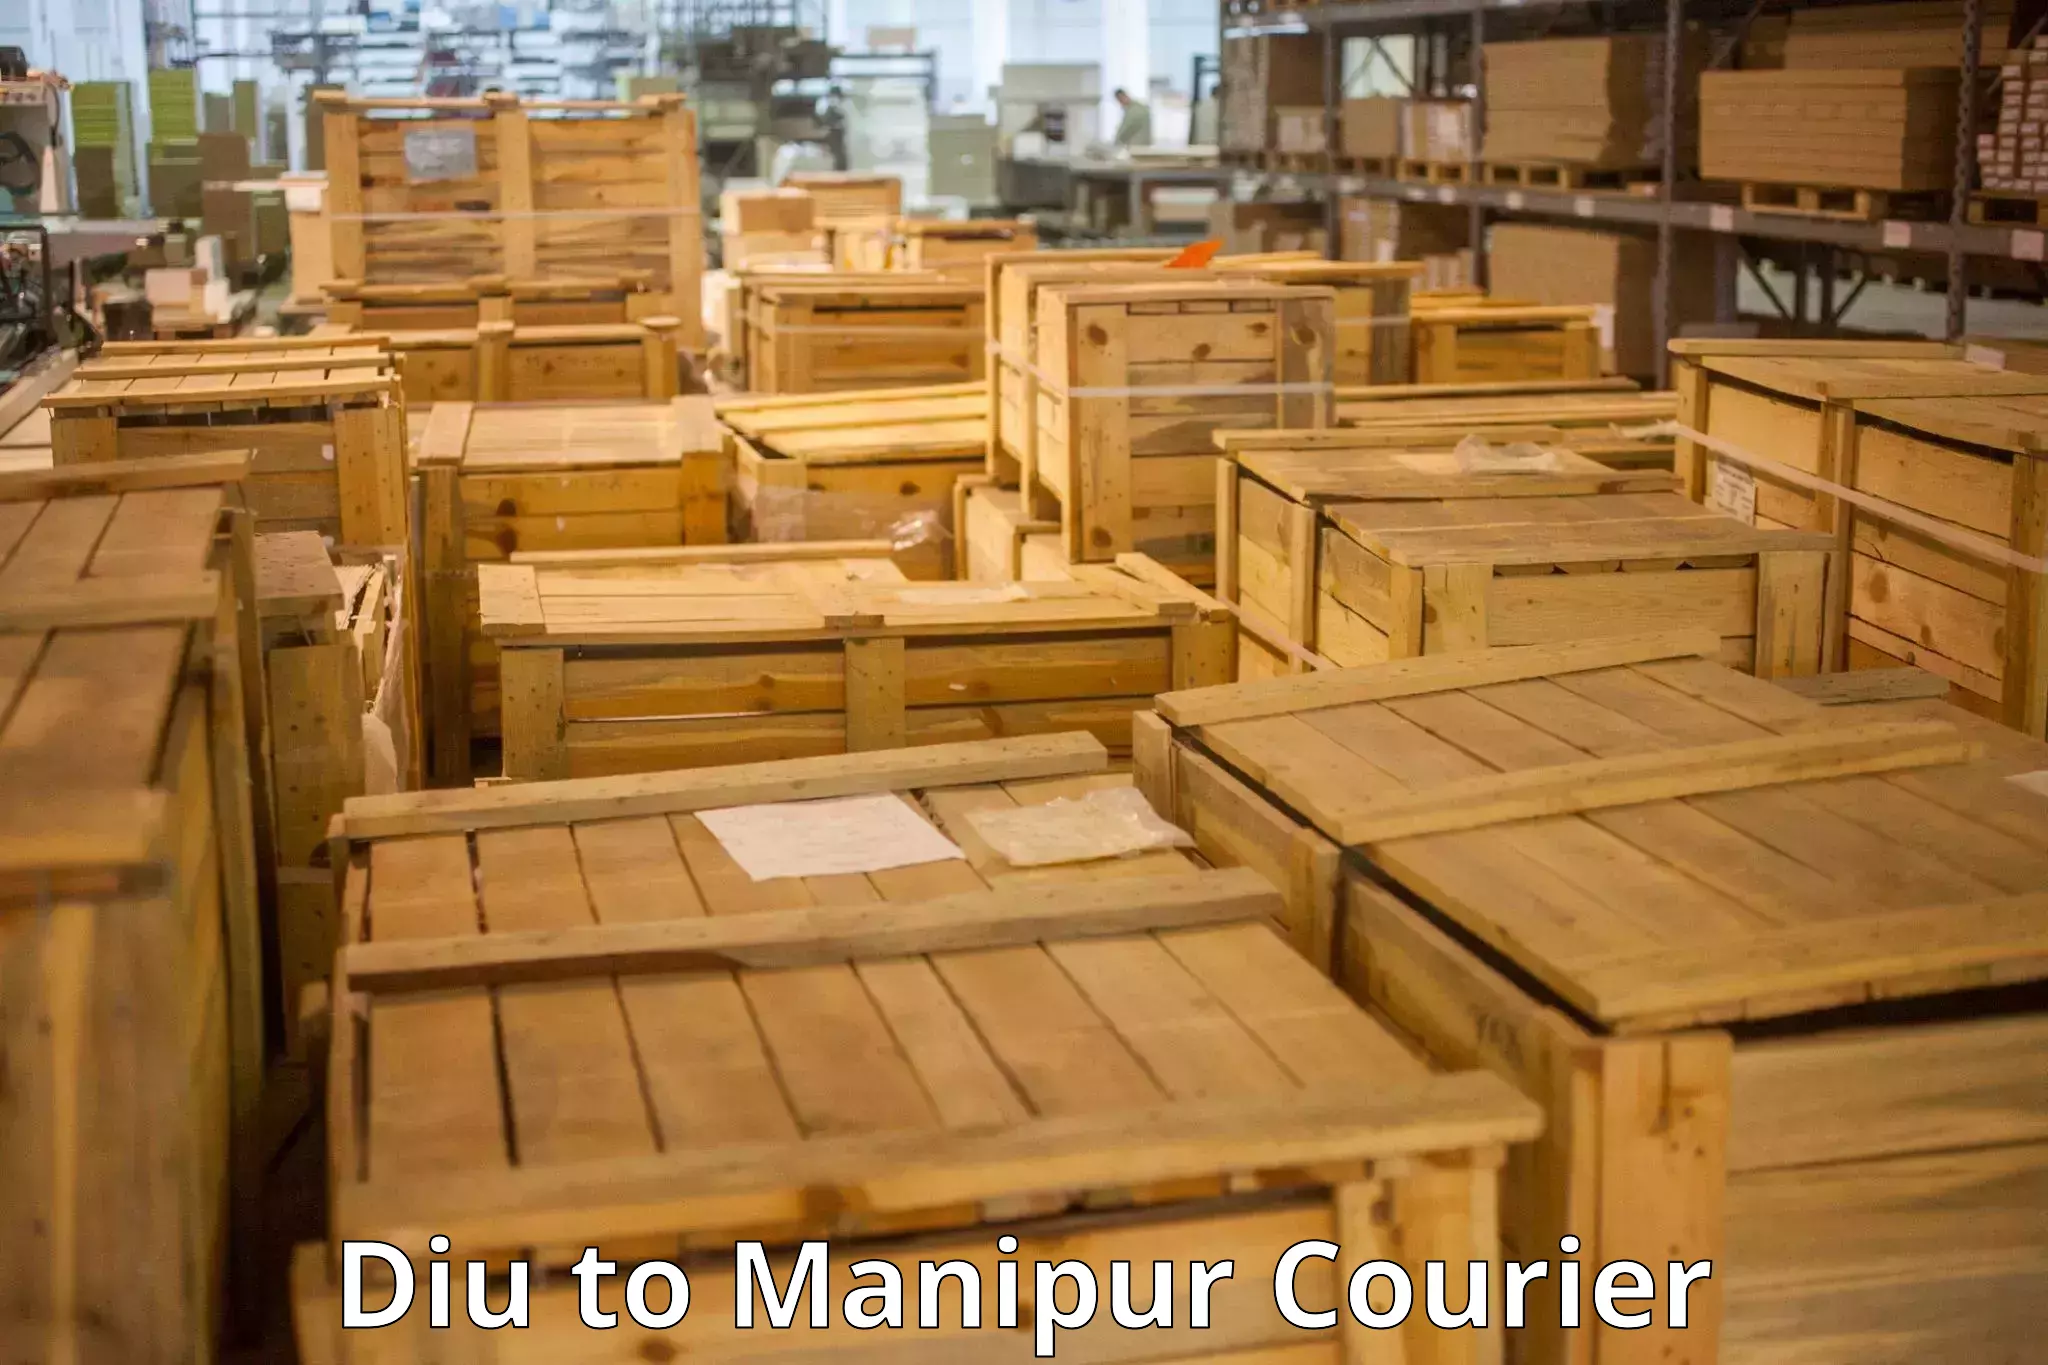 Luggage transit service Diu to Manipur